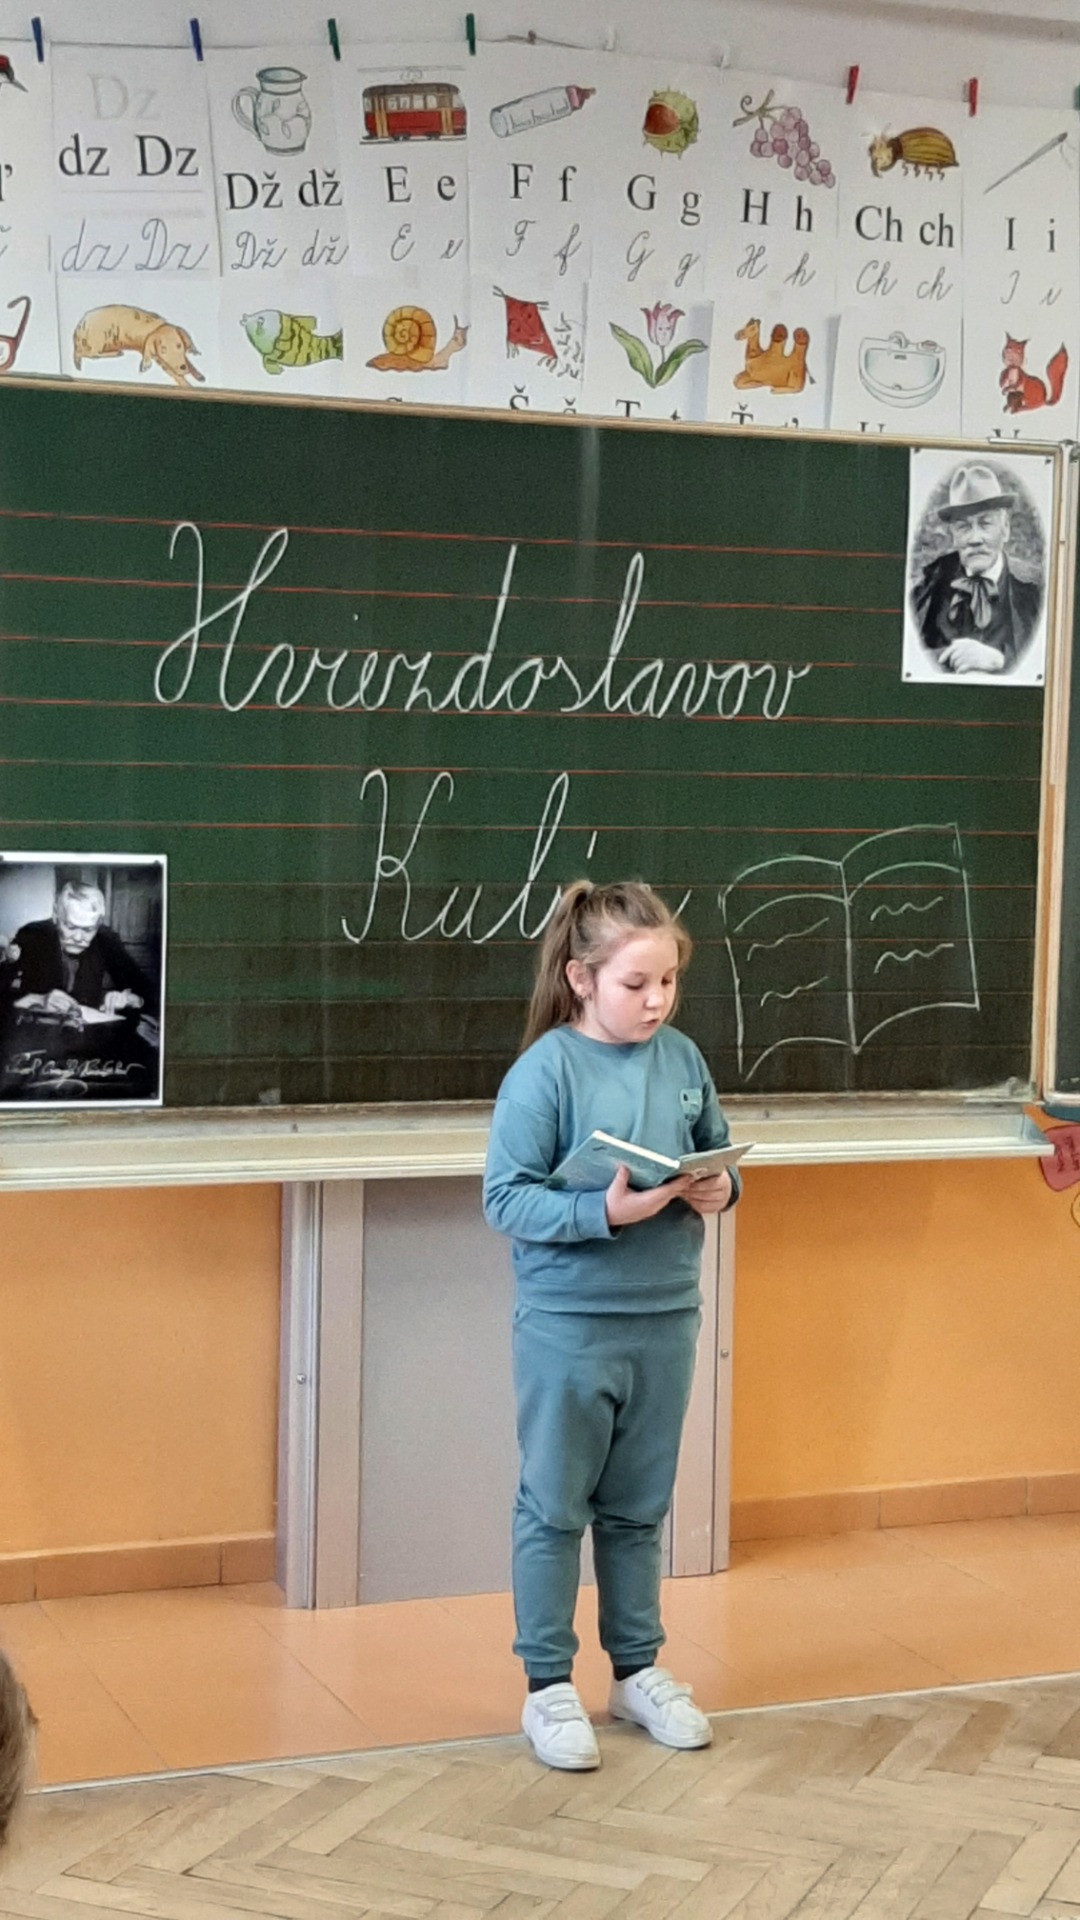 Hviezdoslavov Kubín - školské kolo - Obrázok 3